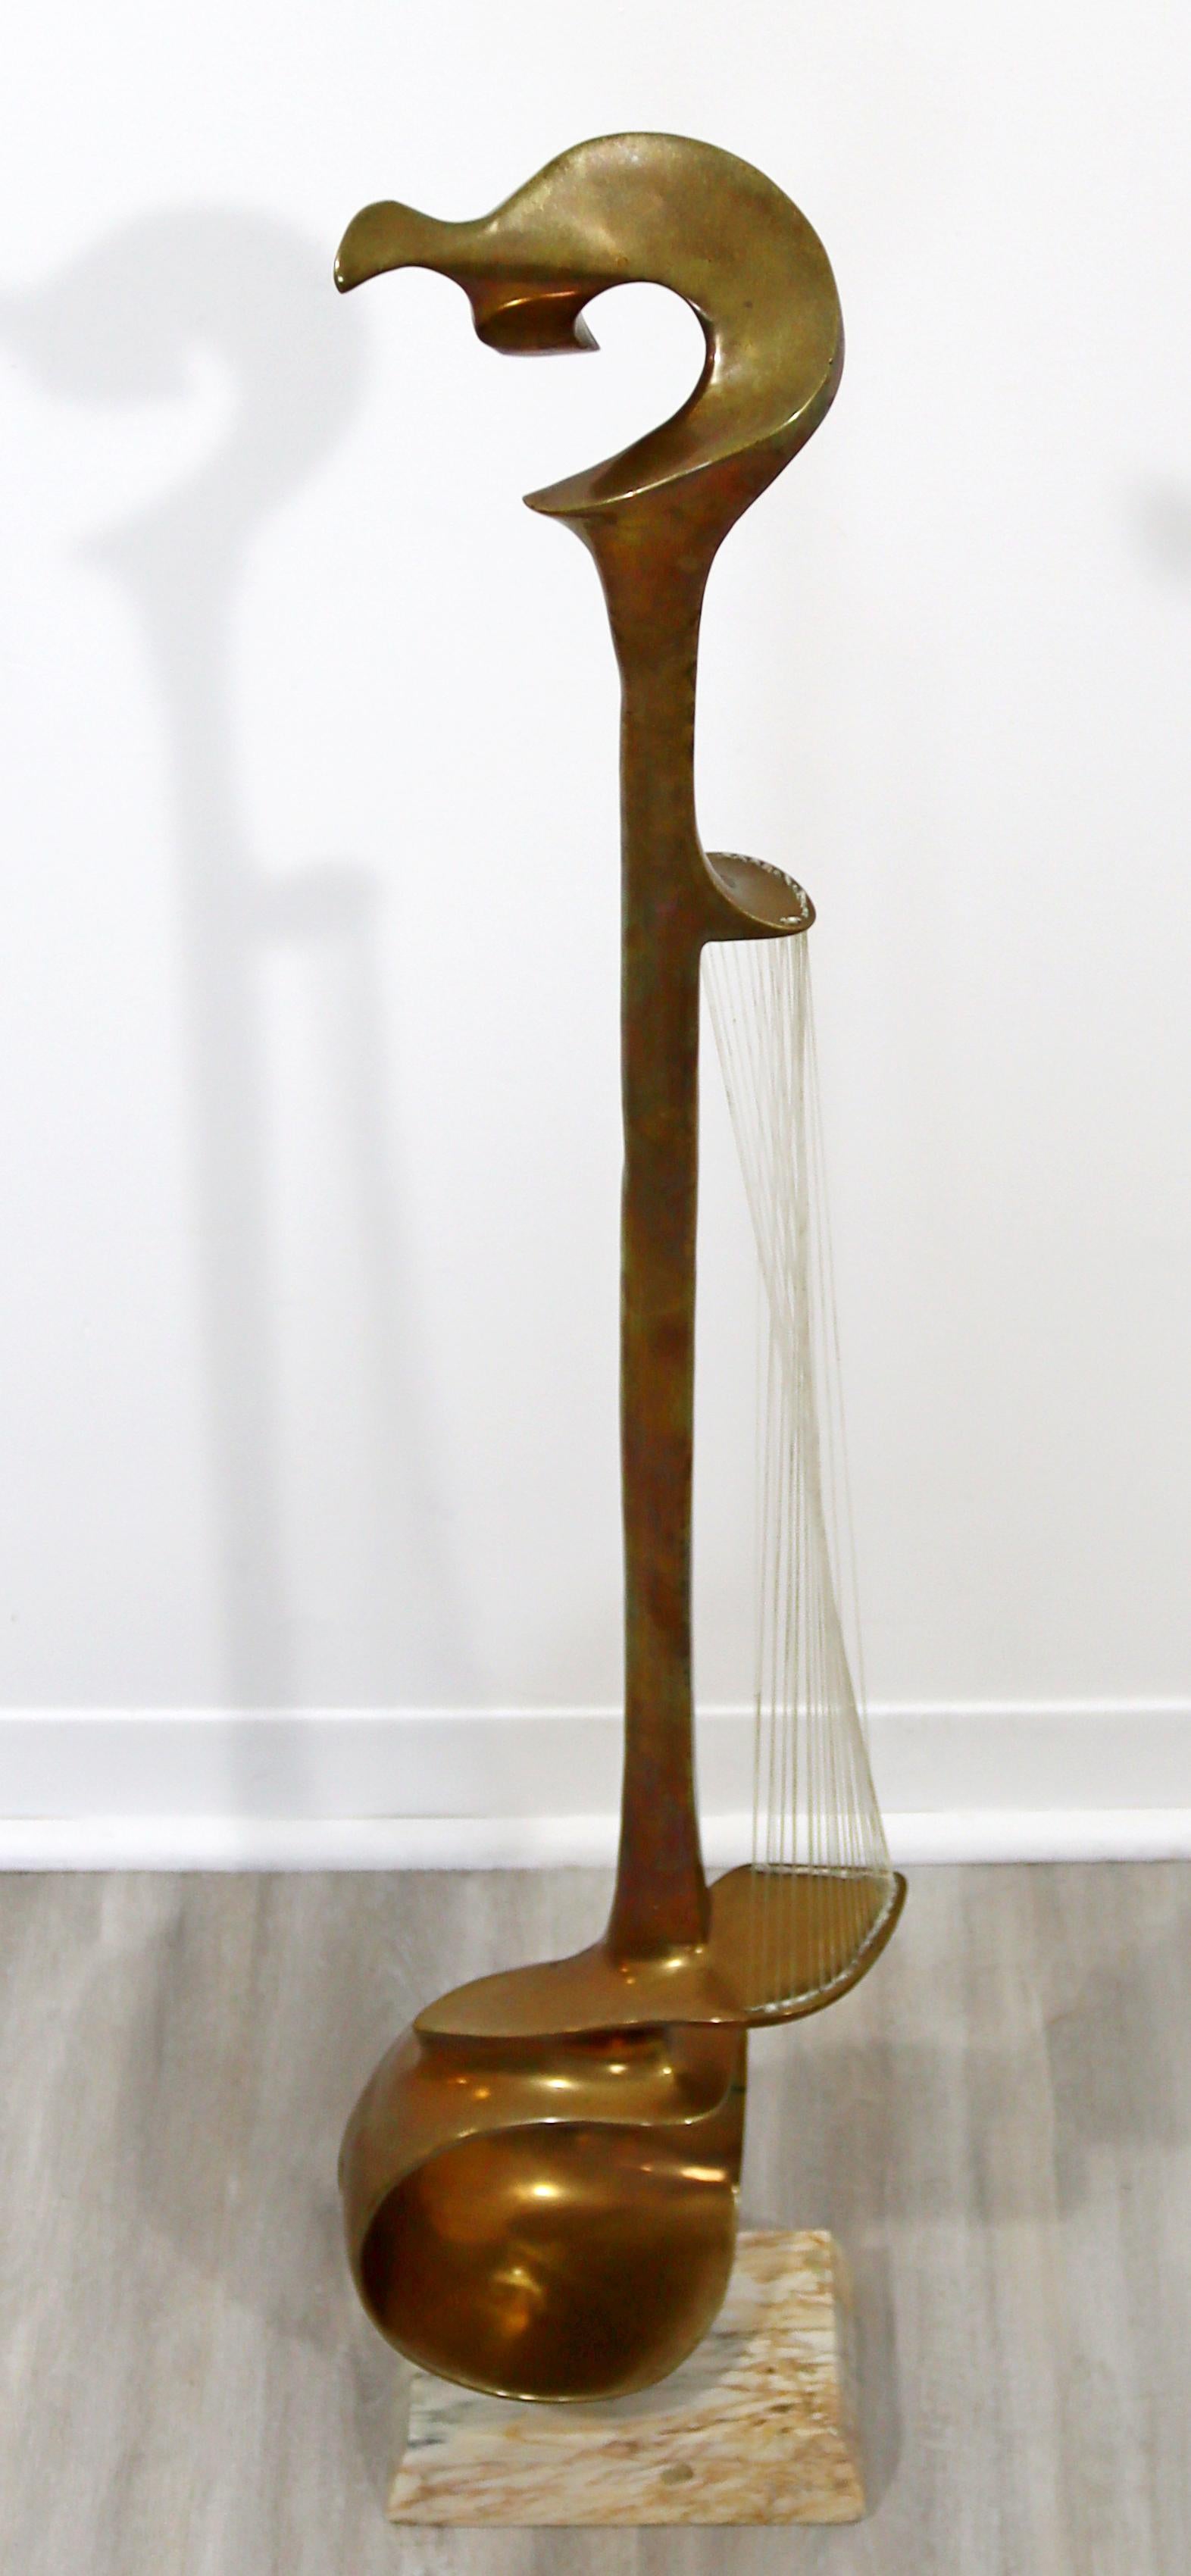 Nous vous proposons une brillante sculpture de sol en bronze sur marbre, représentant un instrument à cordes, réalisée par l'artiste Hattakitkosol Somchai. En parfait état. Les dimensions sont de 10